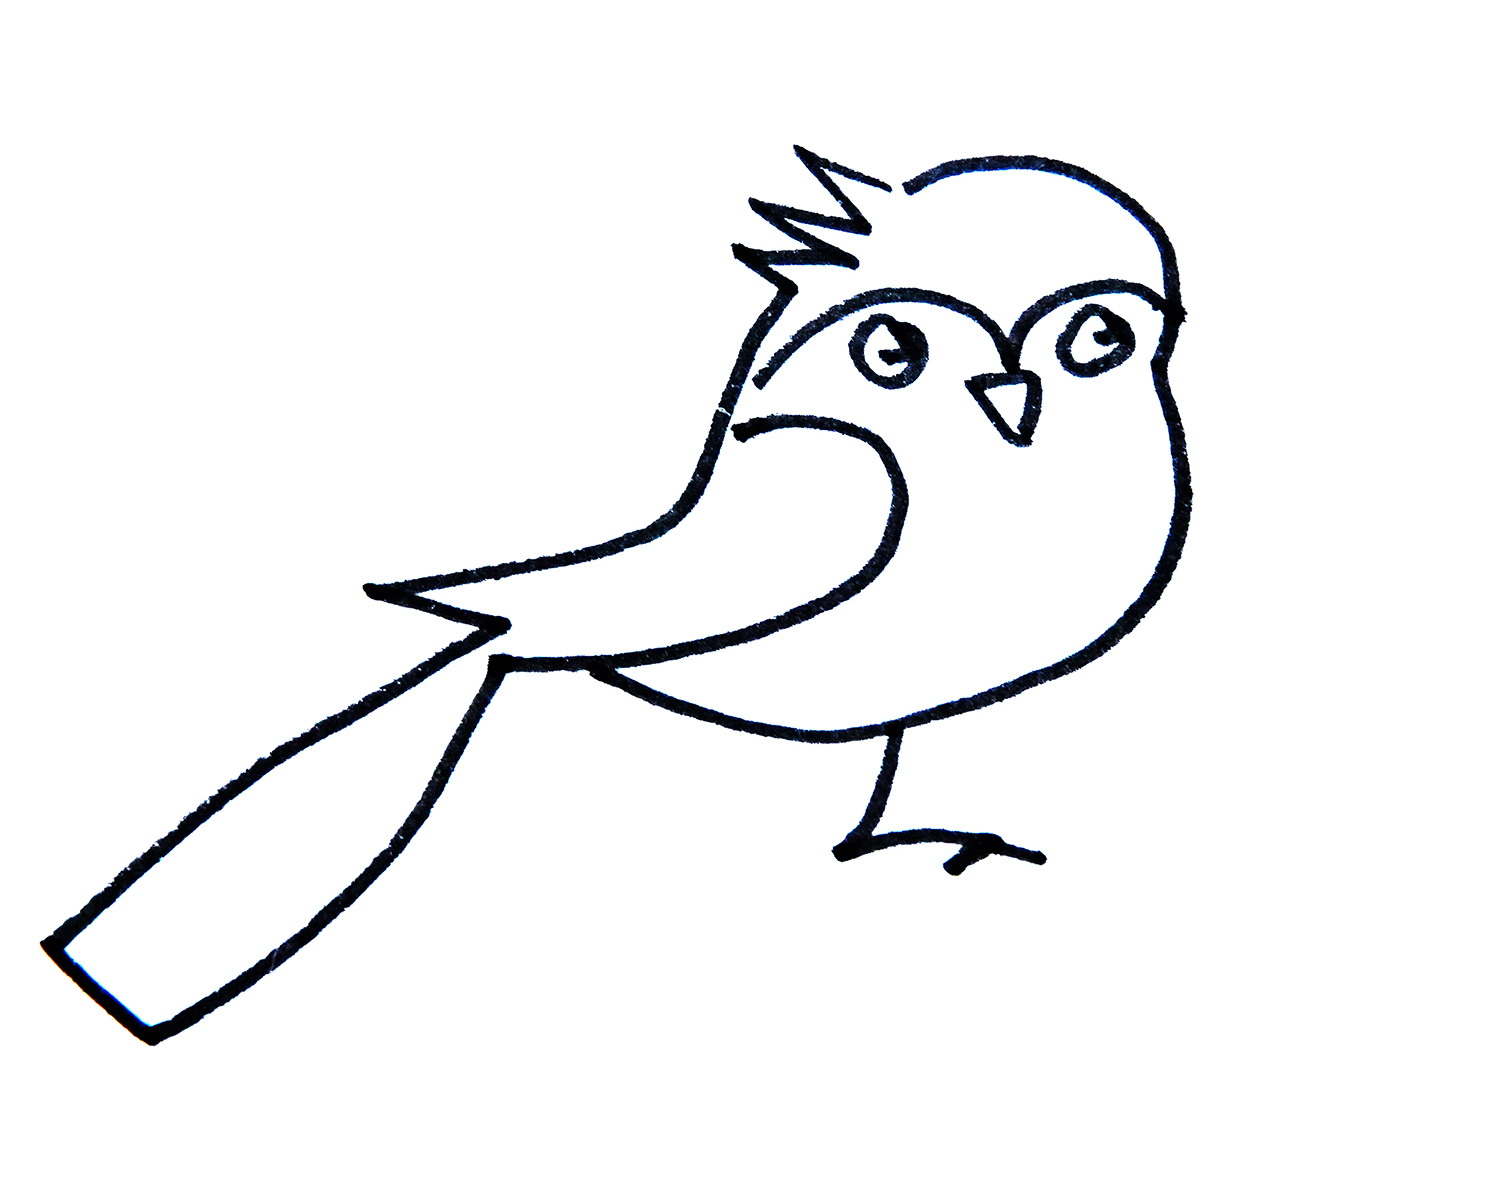 小鸟的画法 简单可爱简笔画图 - 有点网 - 好手艺